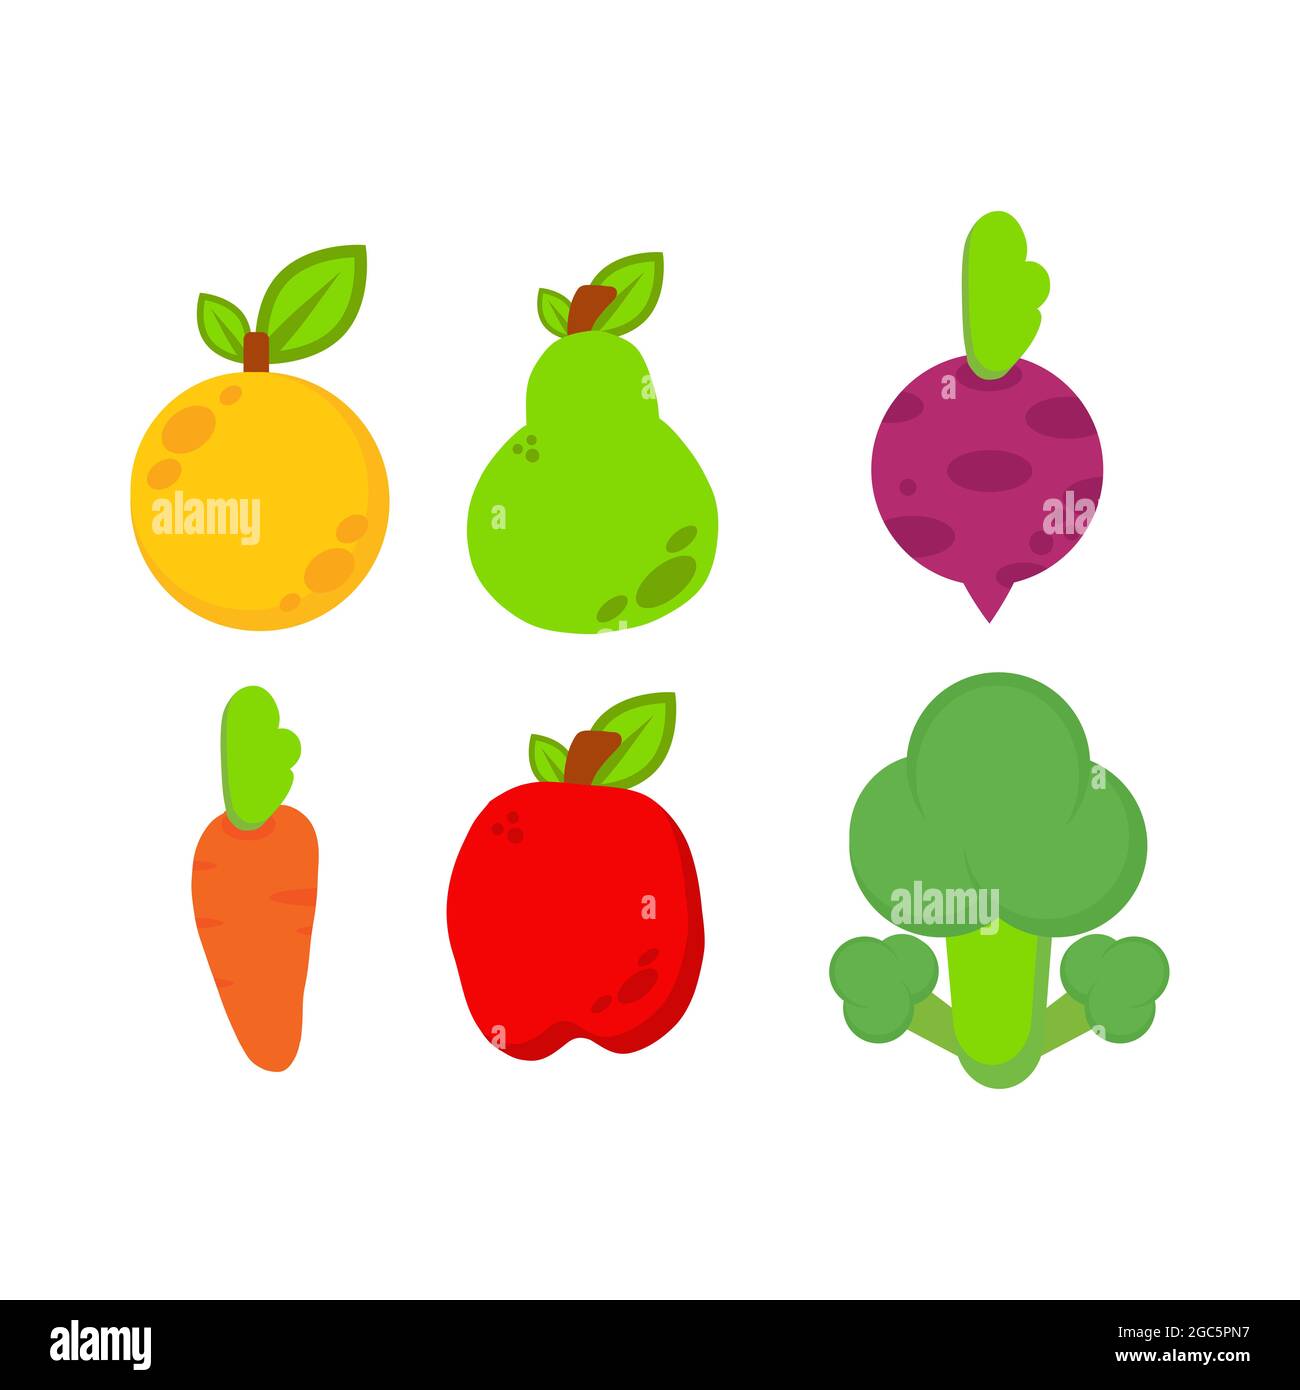 illustrazione delle verdure. giorno vegano del mondo, disegno sano dell'illustrazione dell'alimento. su sfondo bianco Foto Stock